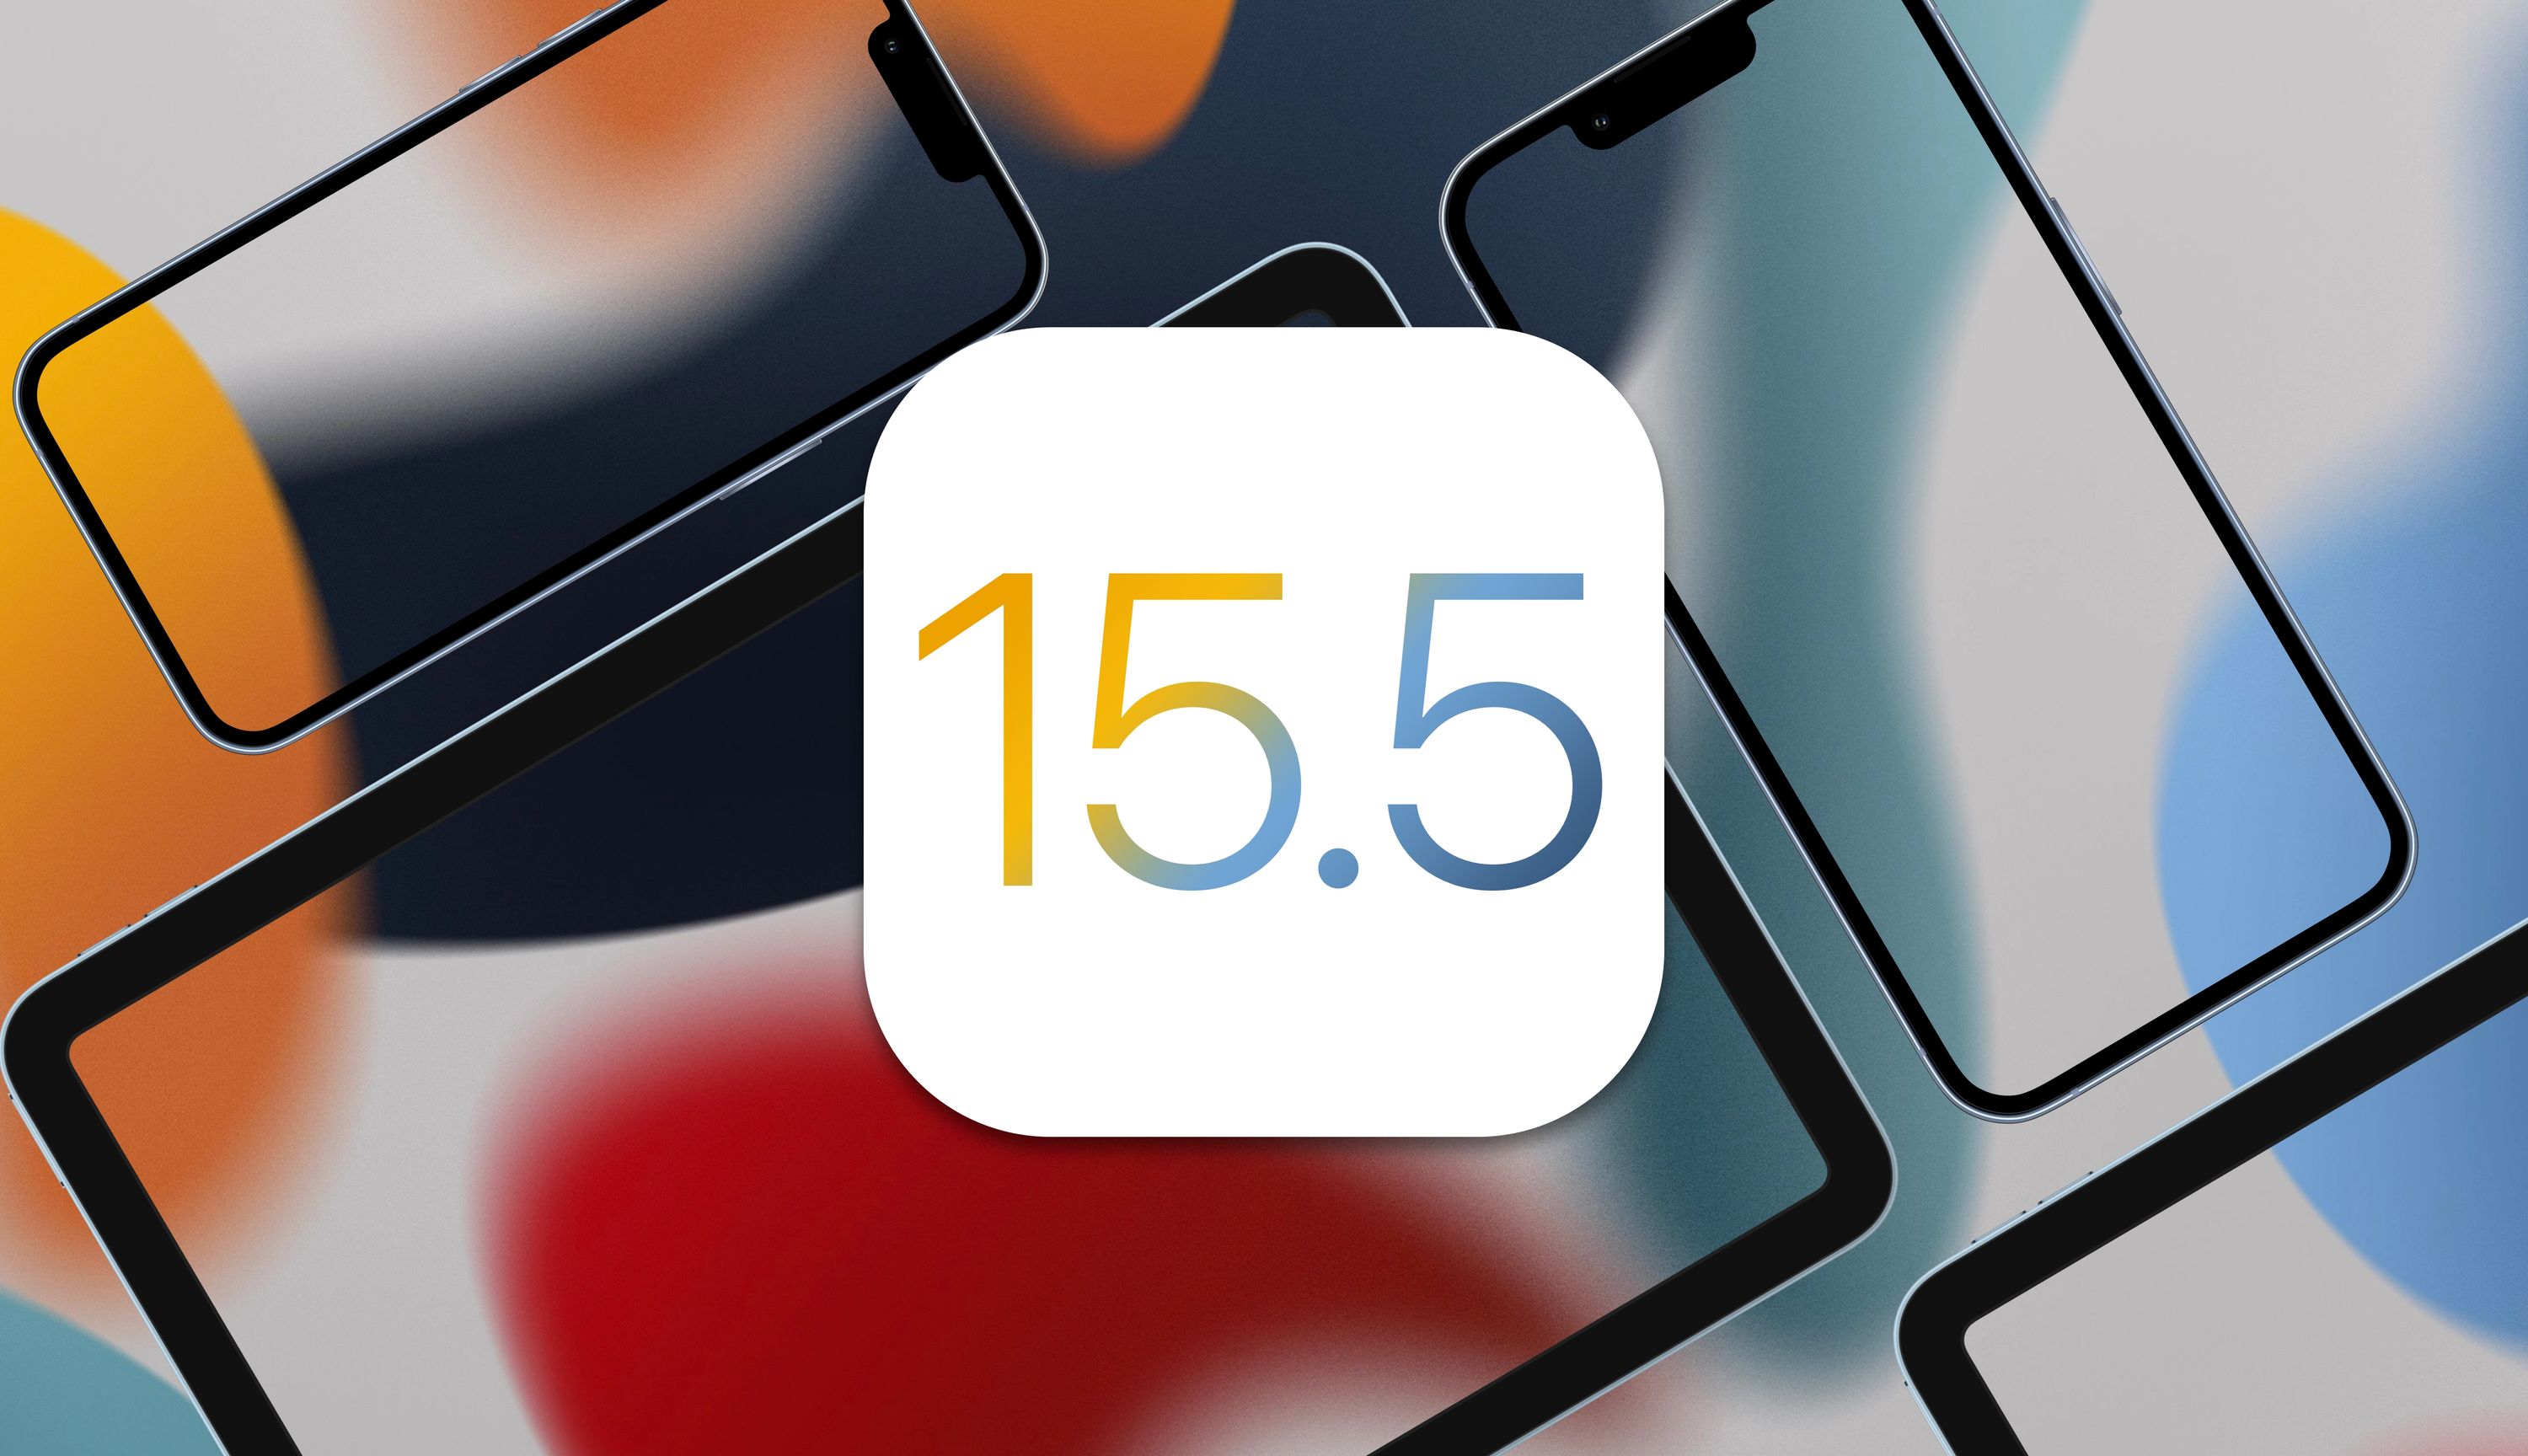 iOS e iPadOS 15.5 acabam de ser lançados! Conhece as novidades